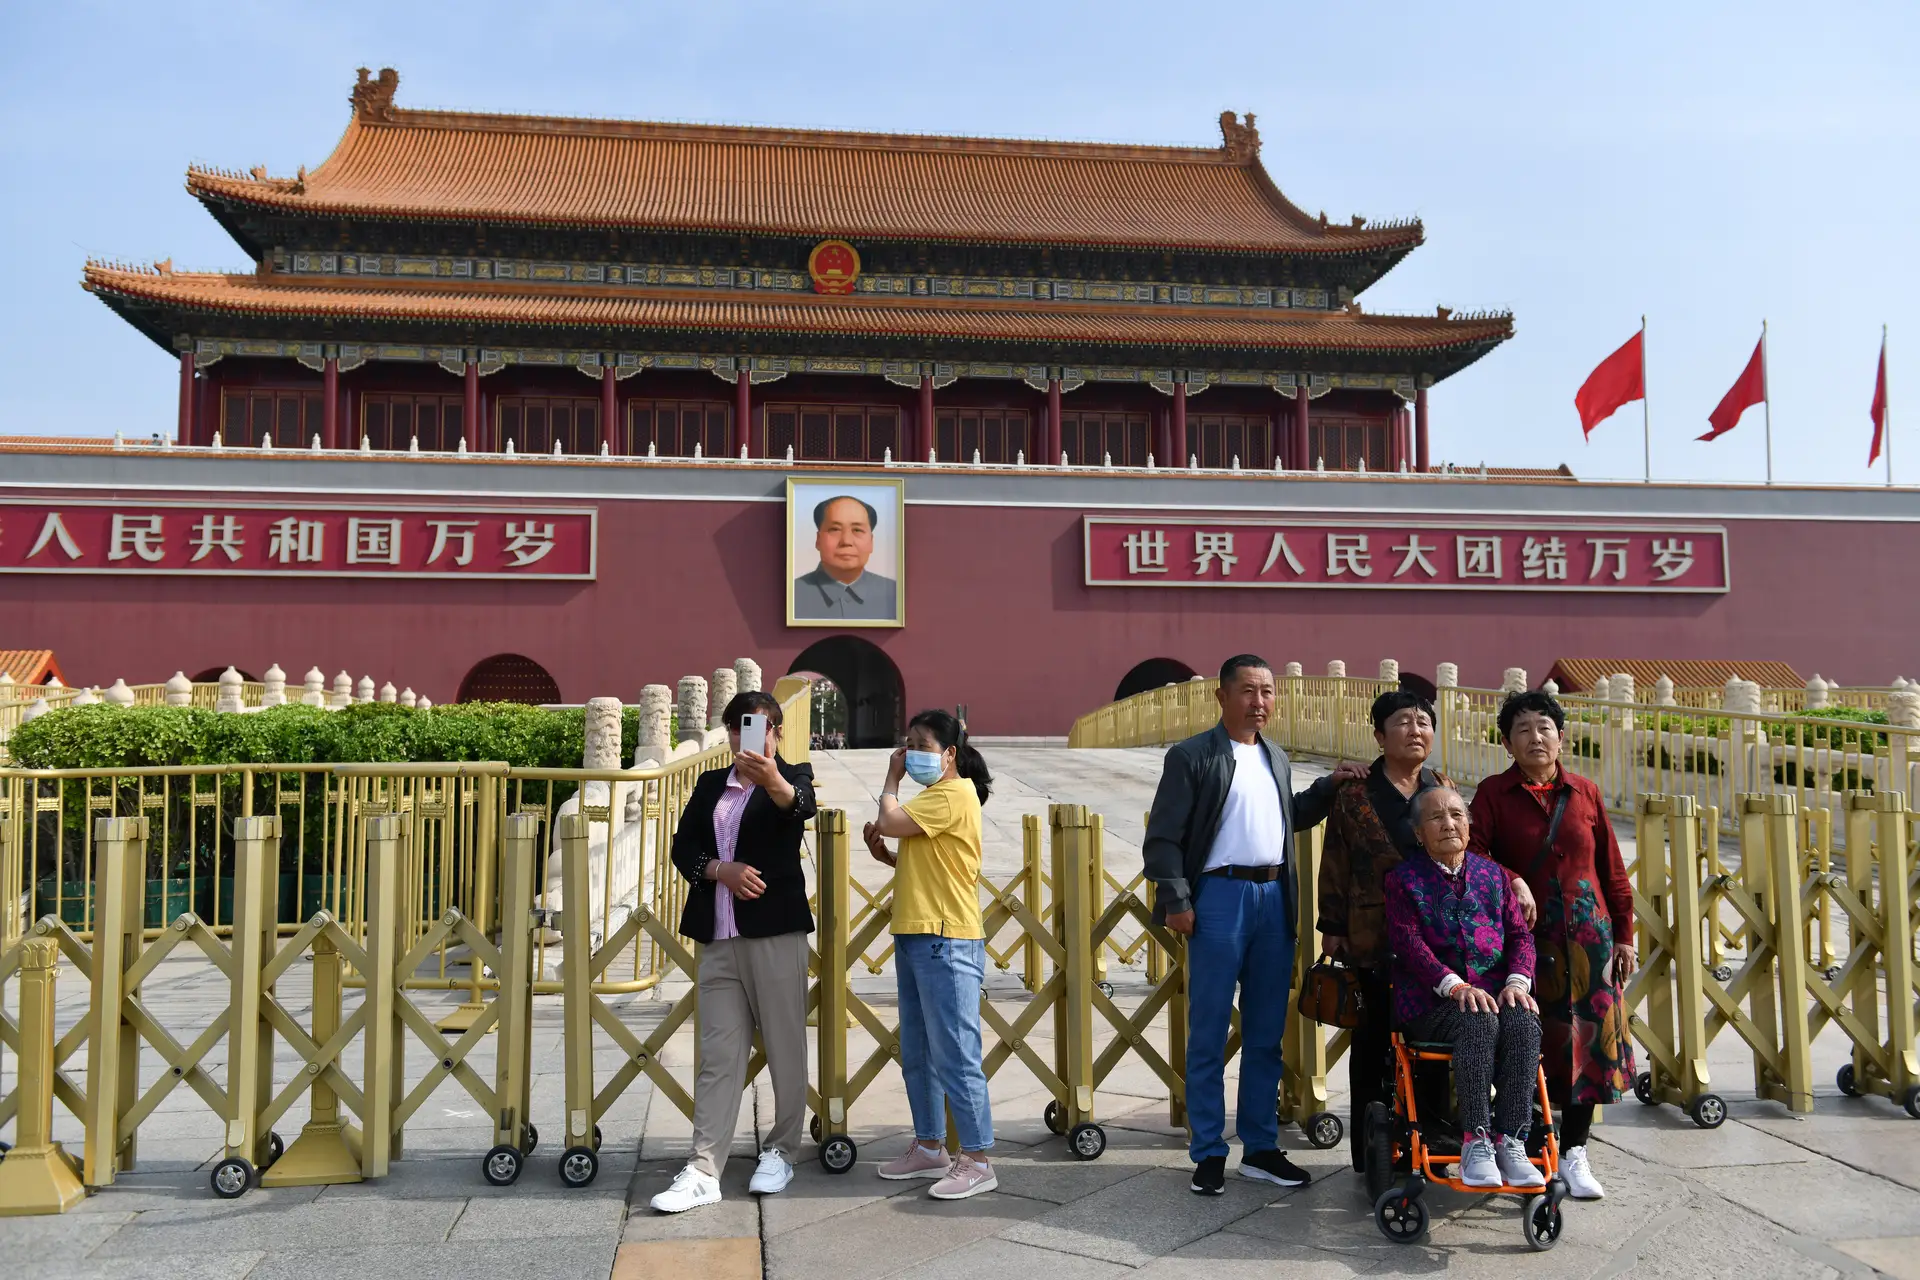 A Praça Tiananmen, em Pequim, é popular entre turistas que visitam a capital chinesa, mas o regime não quer que se fale do massacre de 1989, que custou milhares de vidas de ativistas pela liberdade